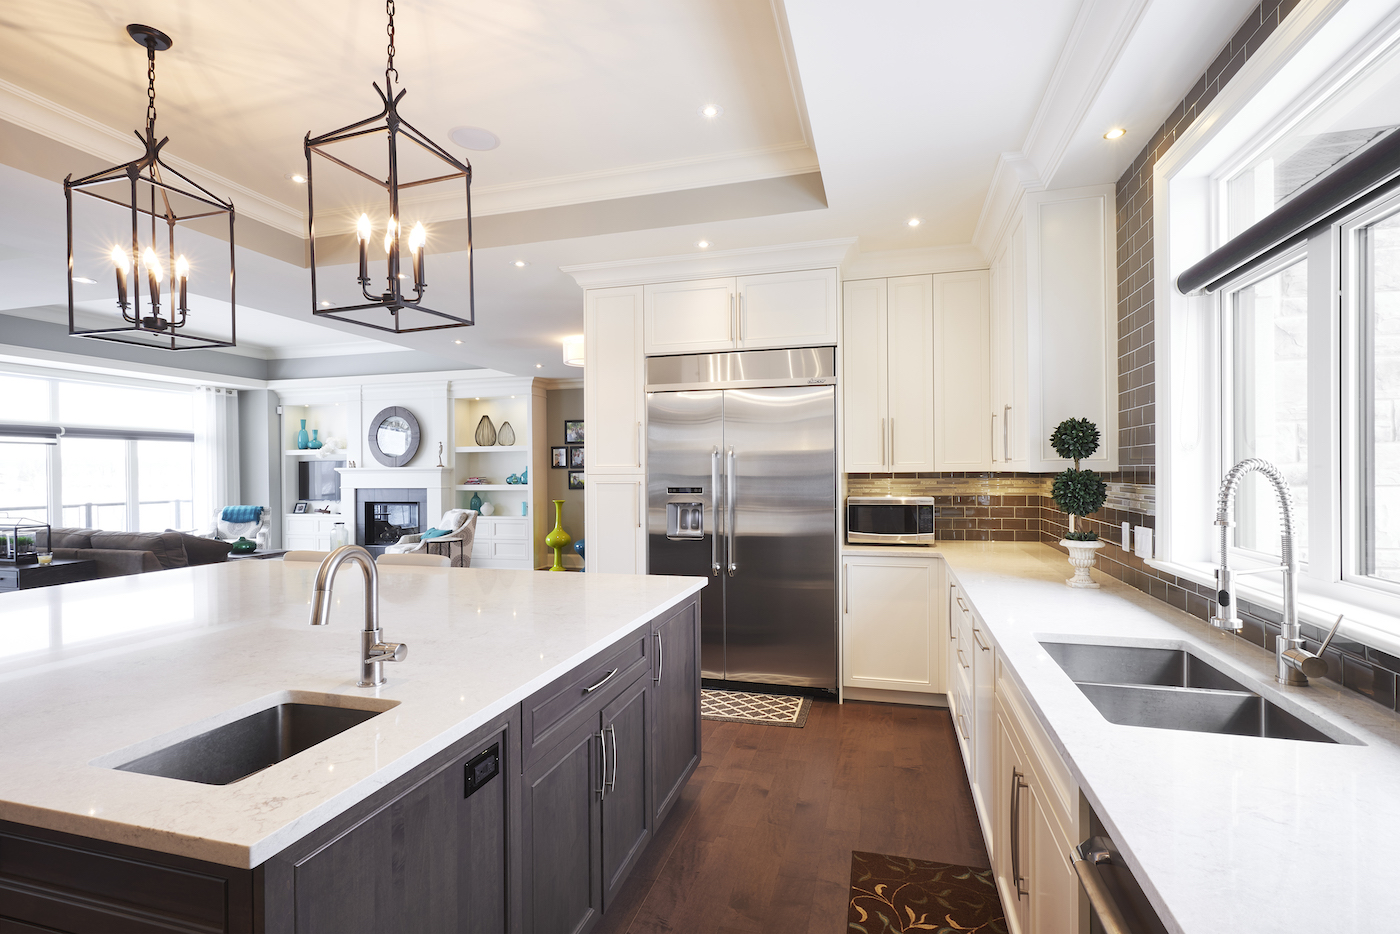 kitchen-interior-design-stainless-steel-fridge